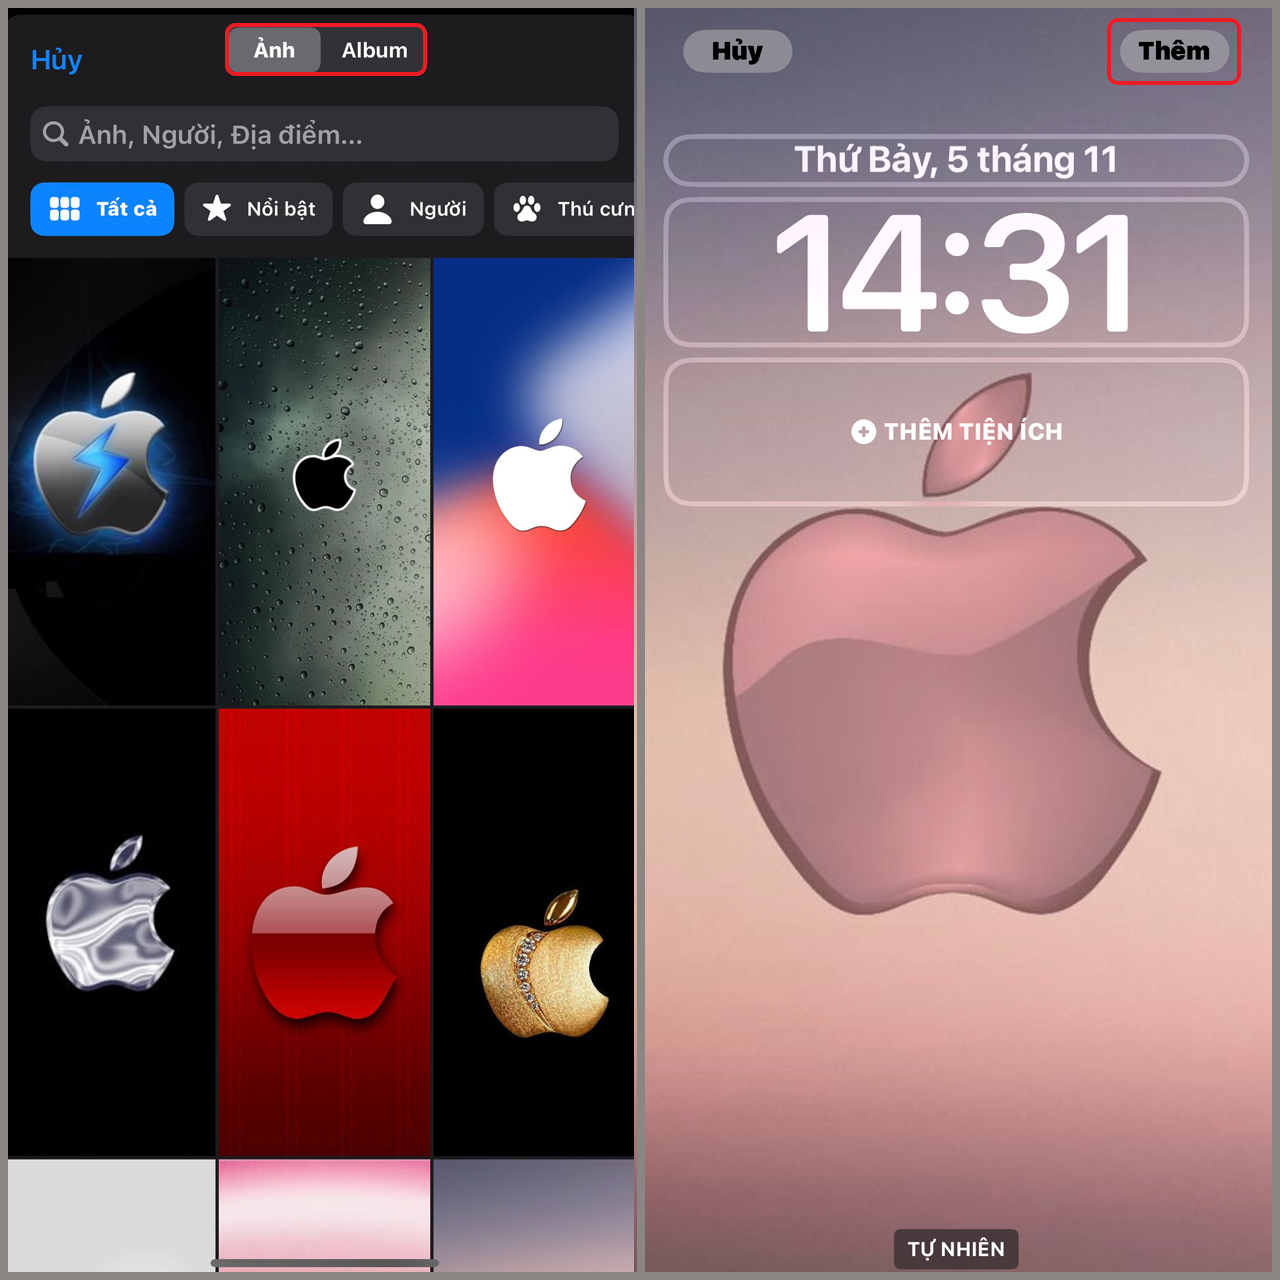 iPhone 5s của em Khi phát động lại là screen nền White táo đen